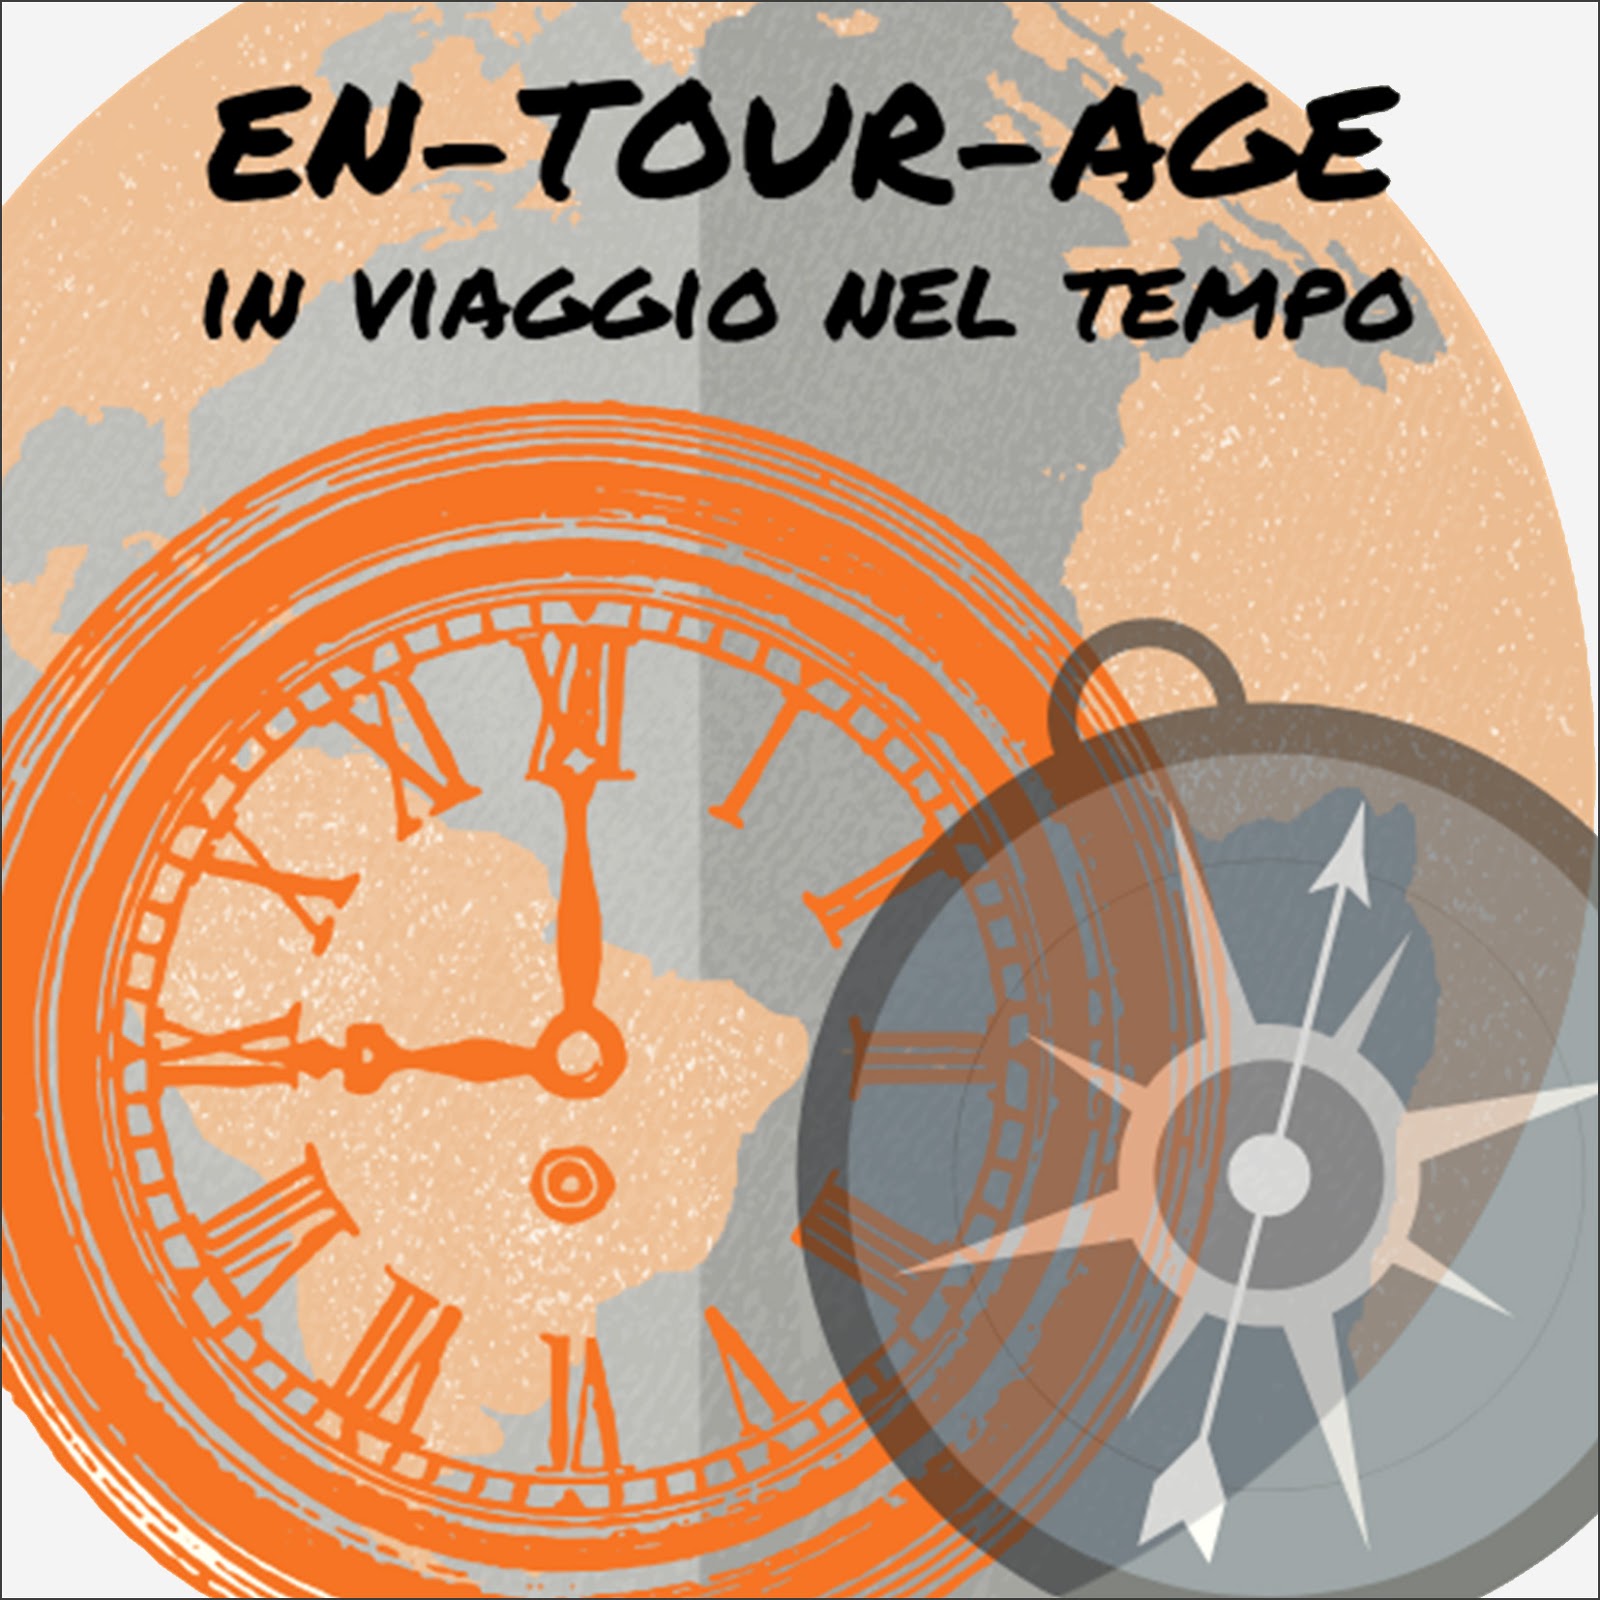 en_tour_age_logo